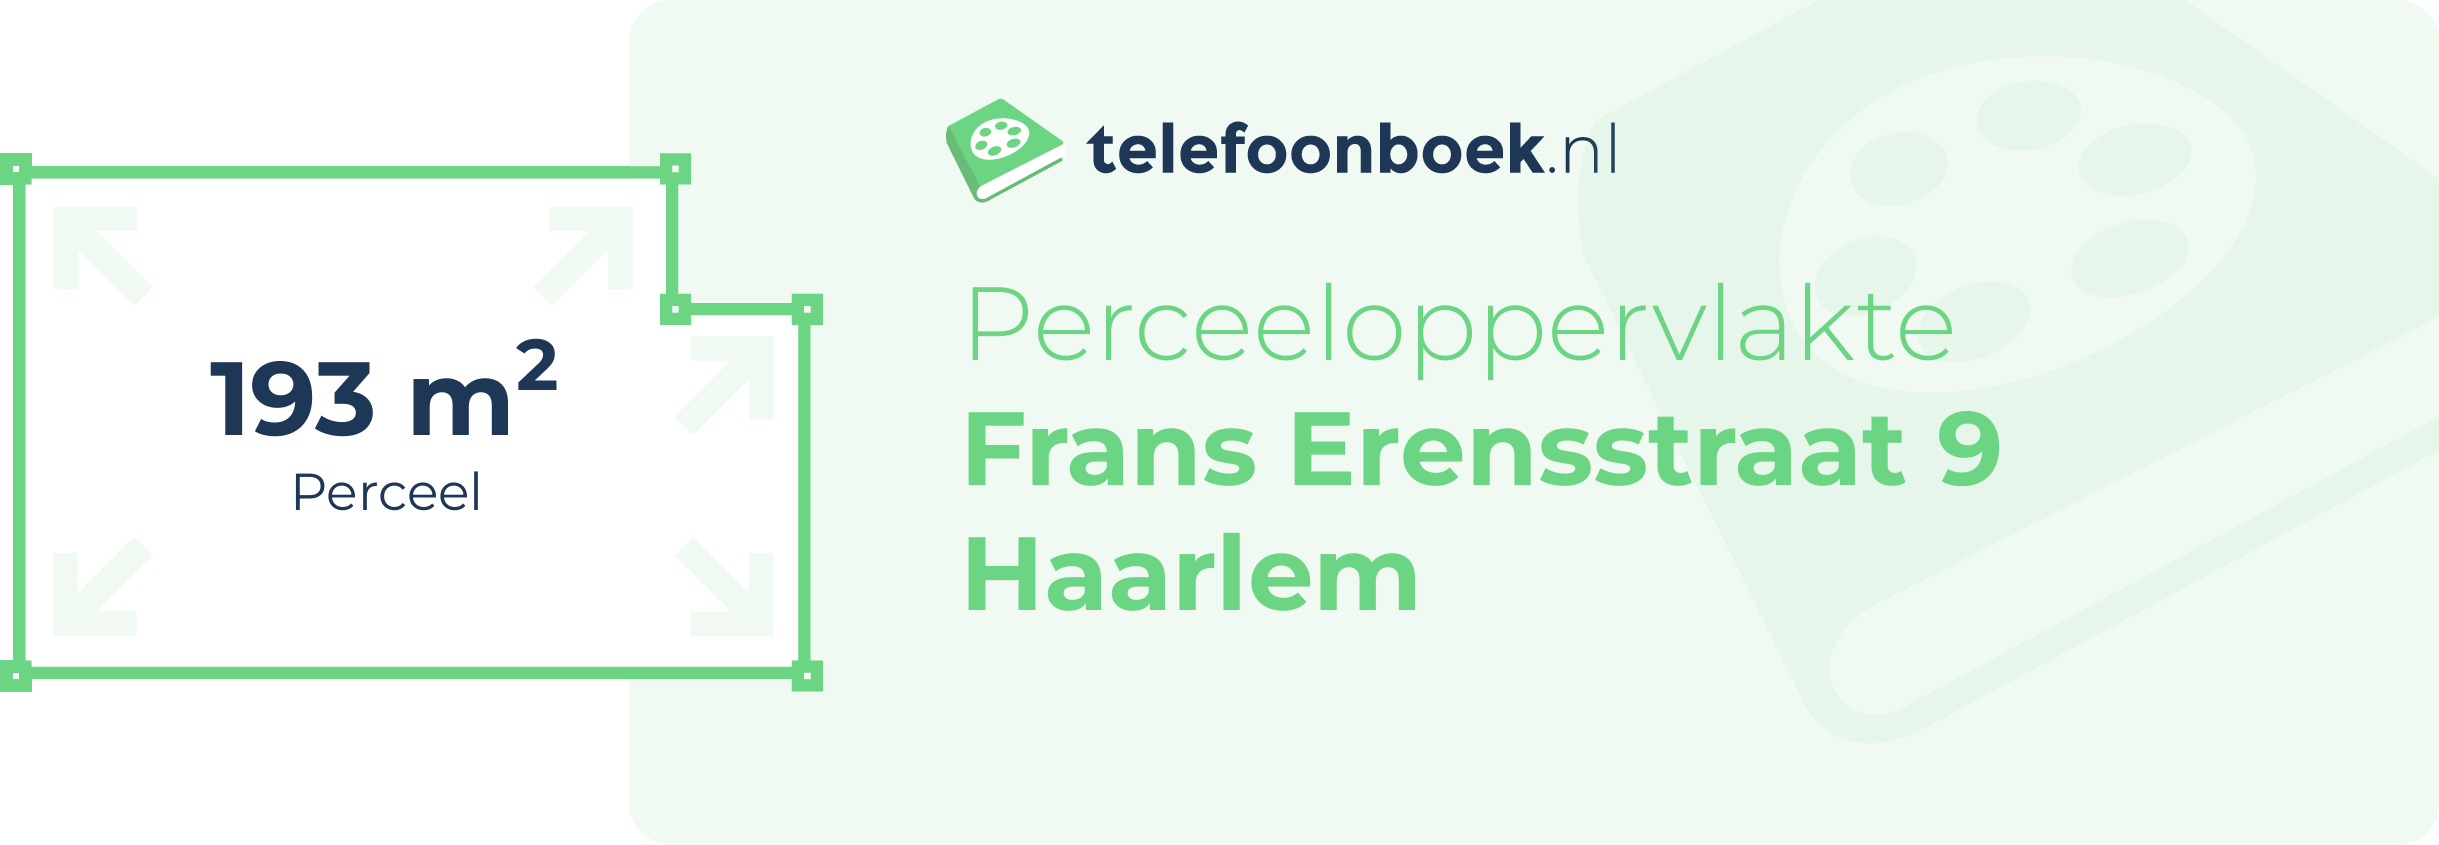 Perceeloppervlakte Frans Erensstraat 9 Haarlem